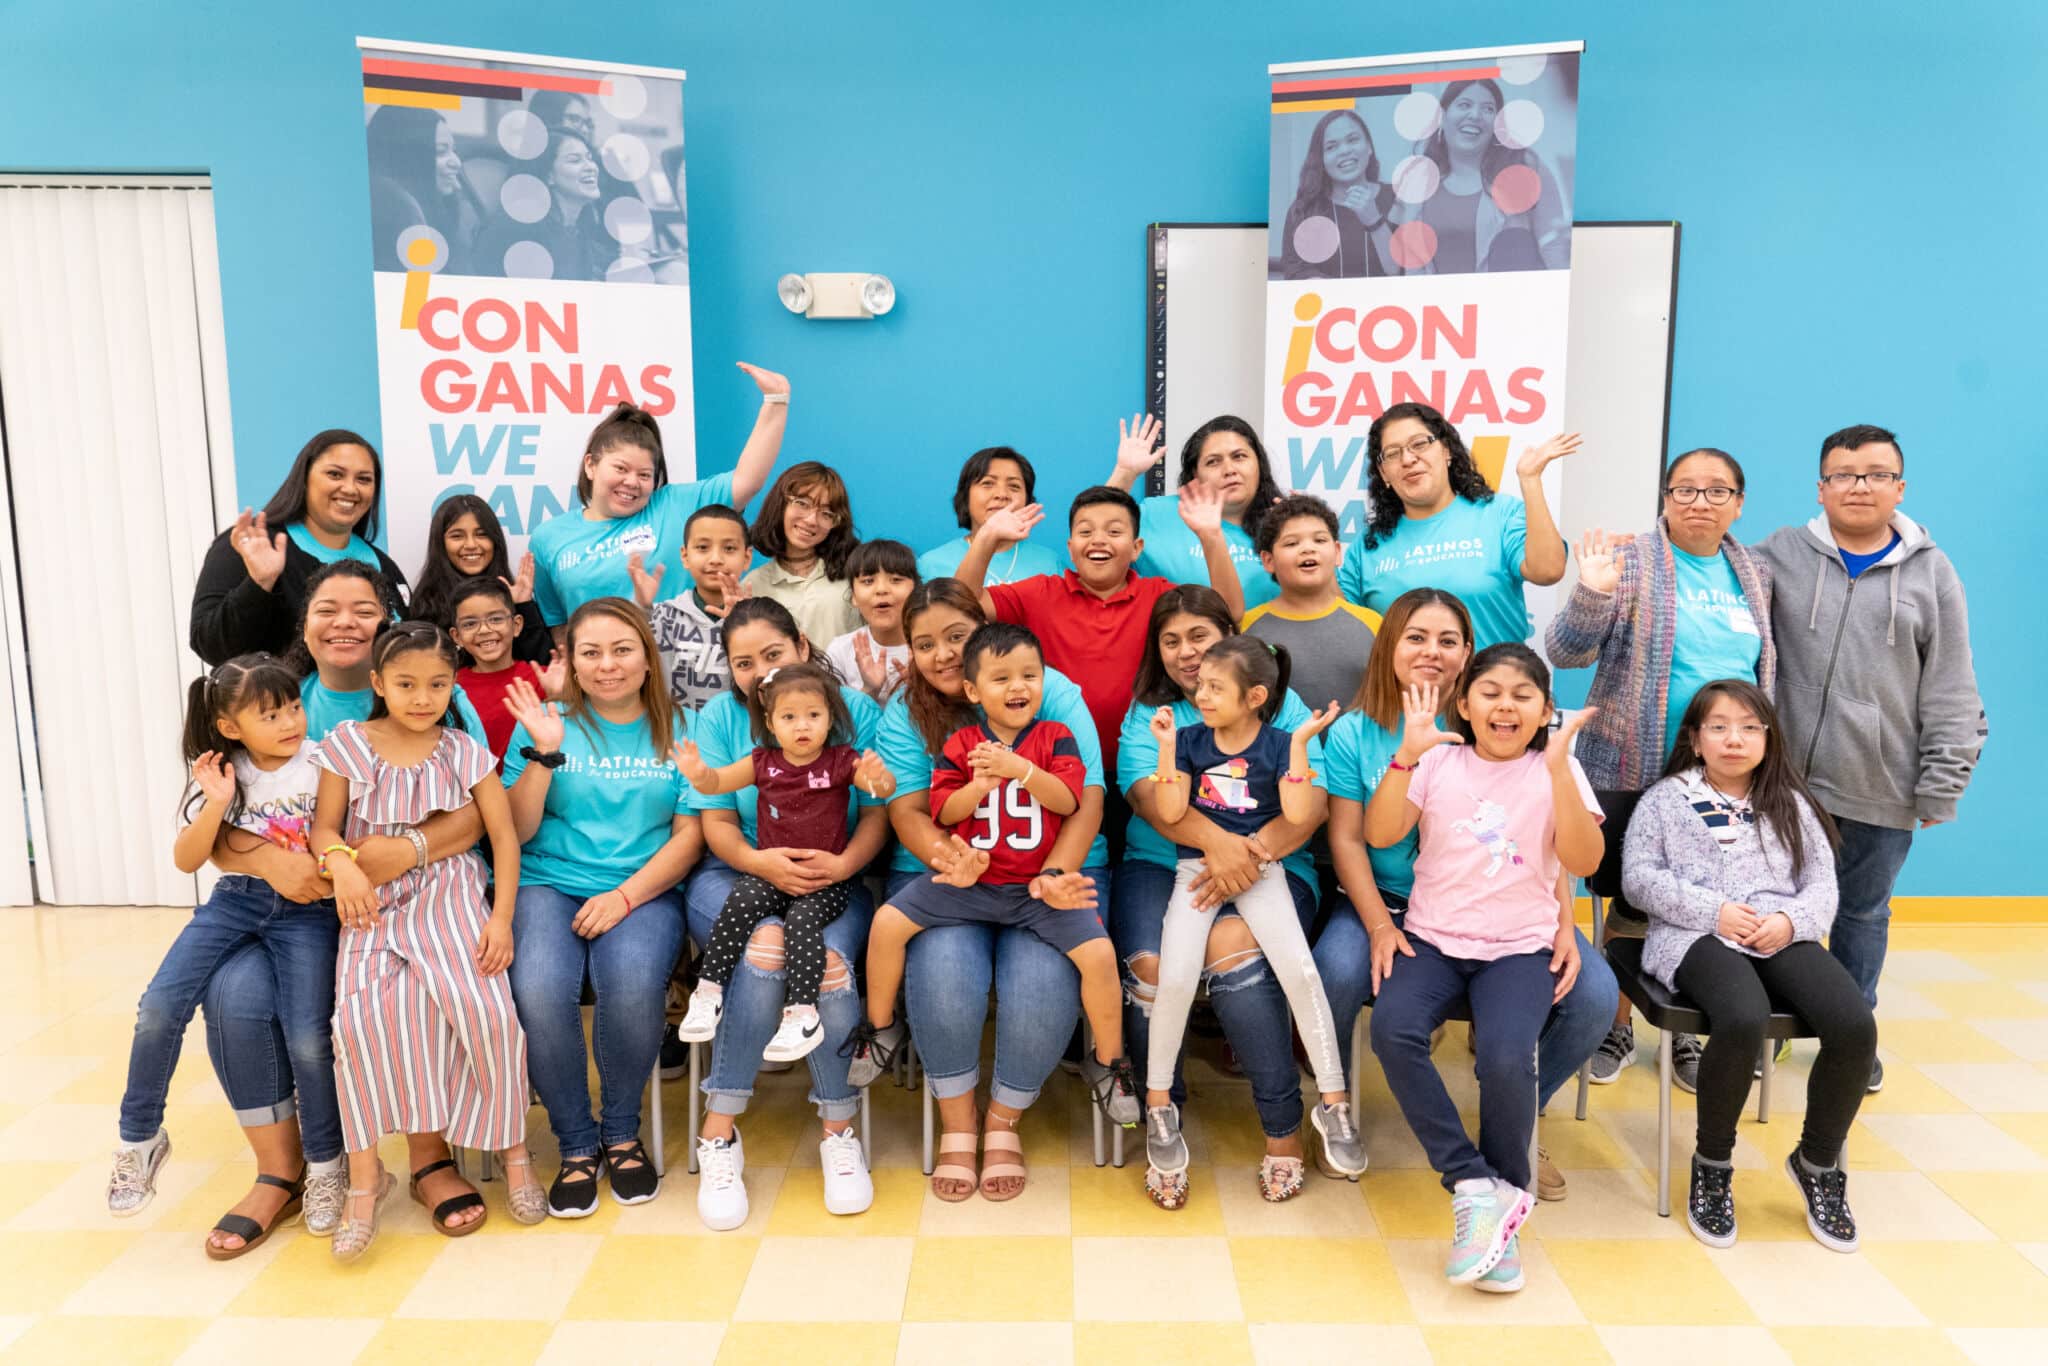 Familias Latinas Por La EducaciÃ³n - Latinos for Education